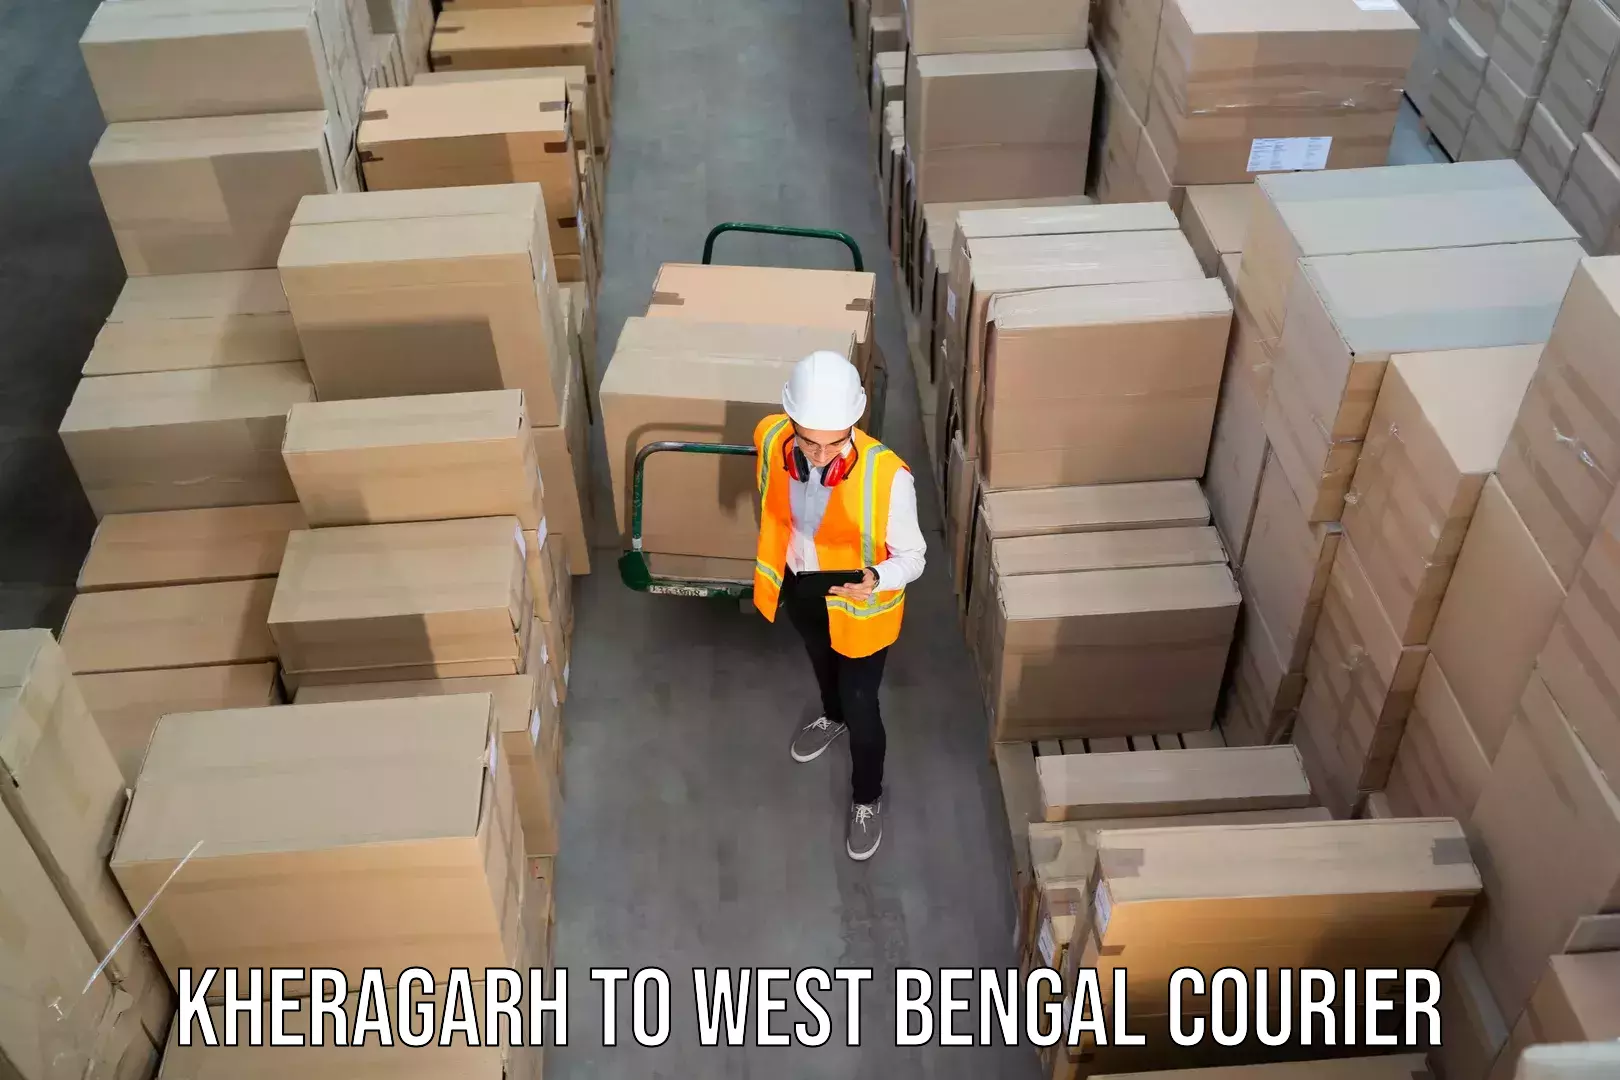 24-hour courier service Kheragarh to Tista Bazar